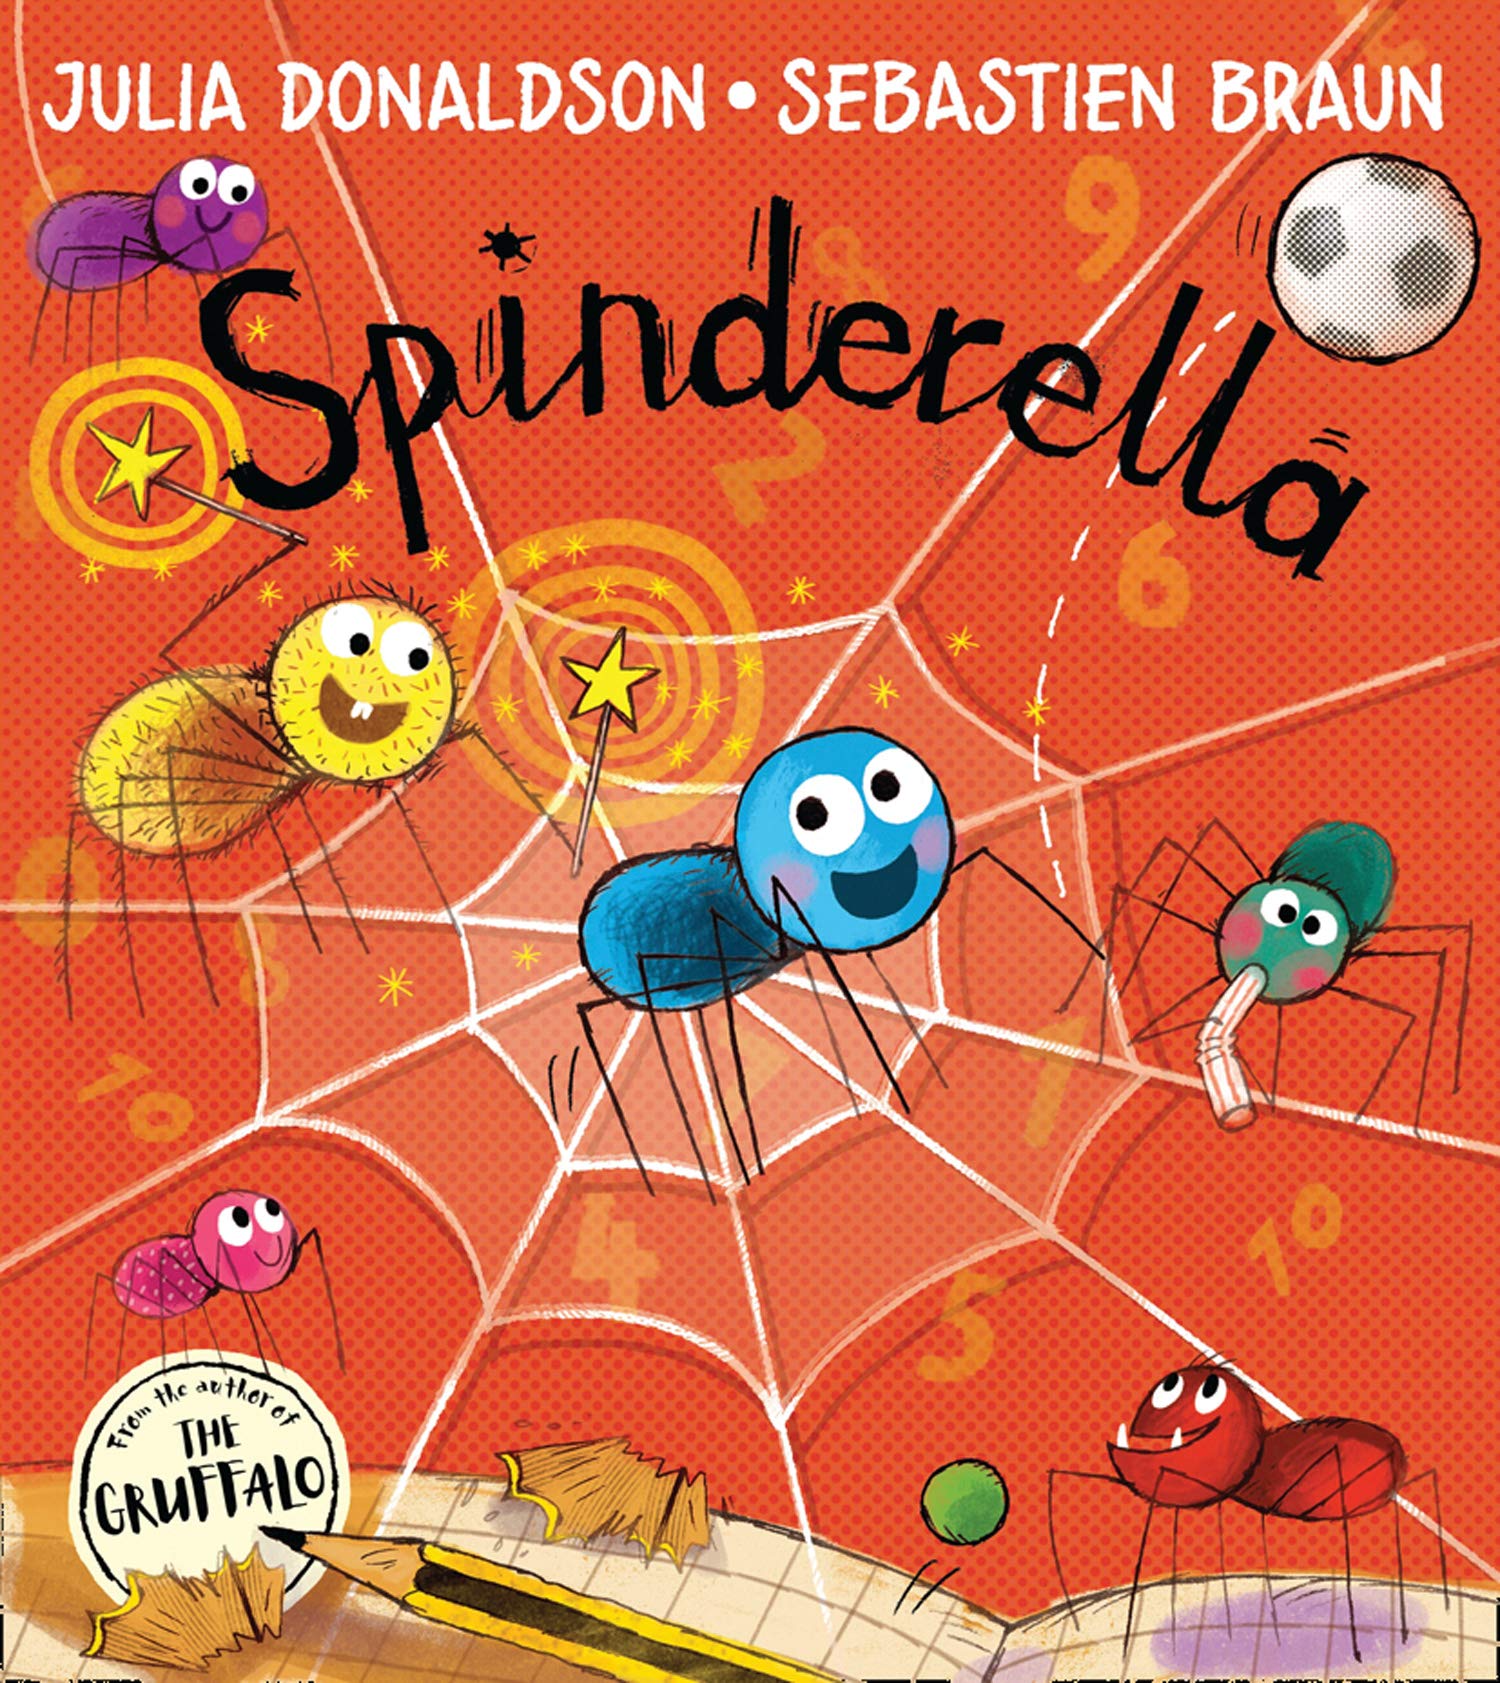 Spinderella - Julia Donaldson